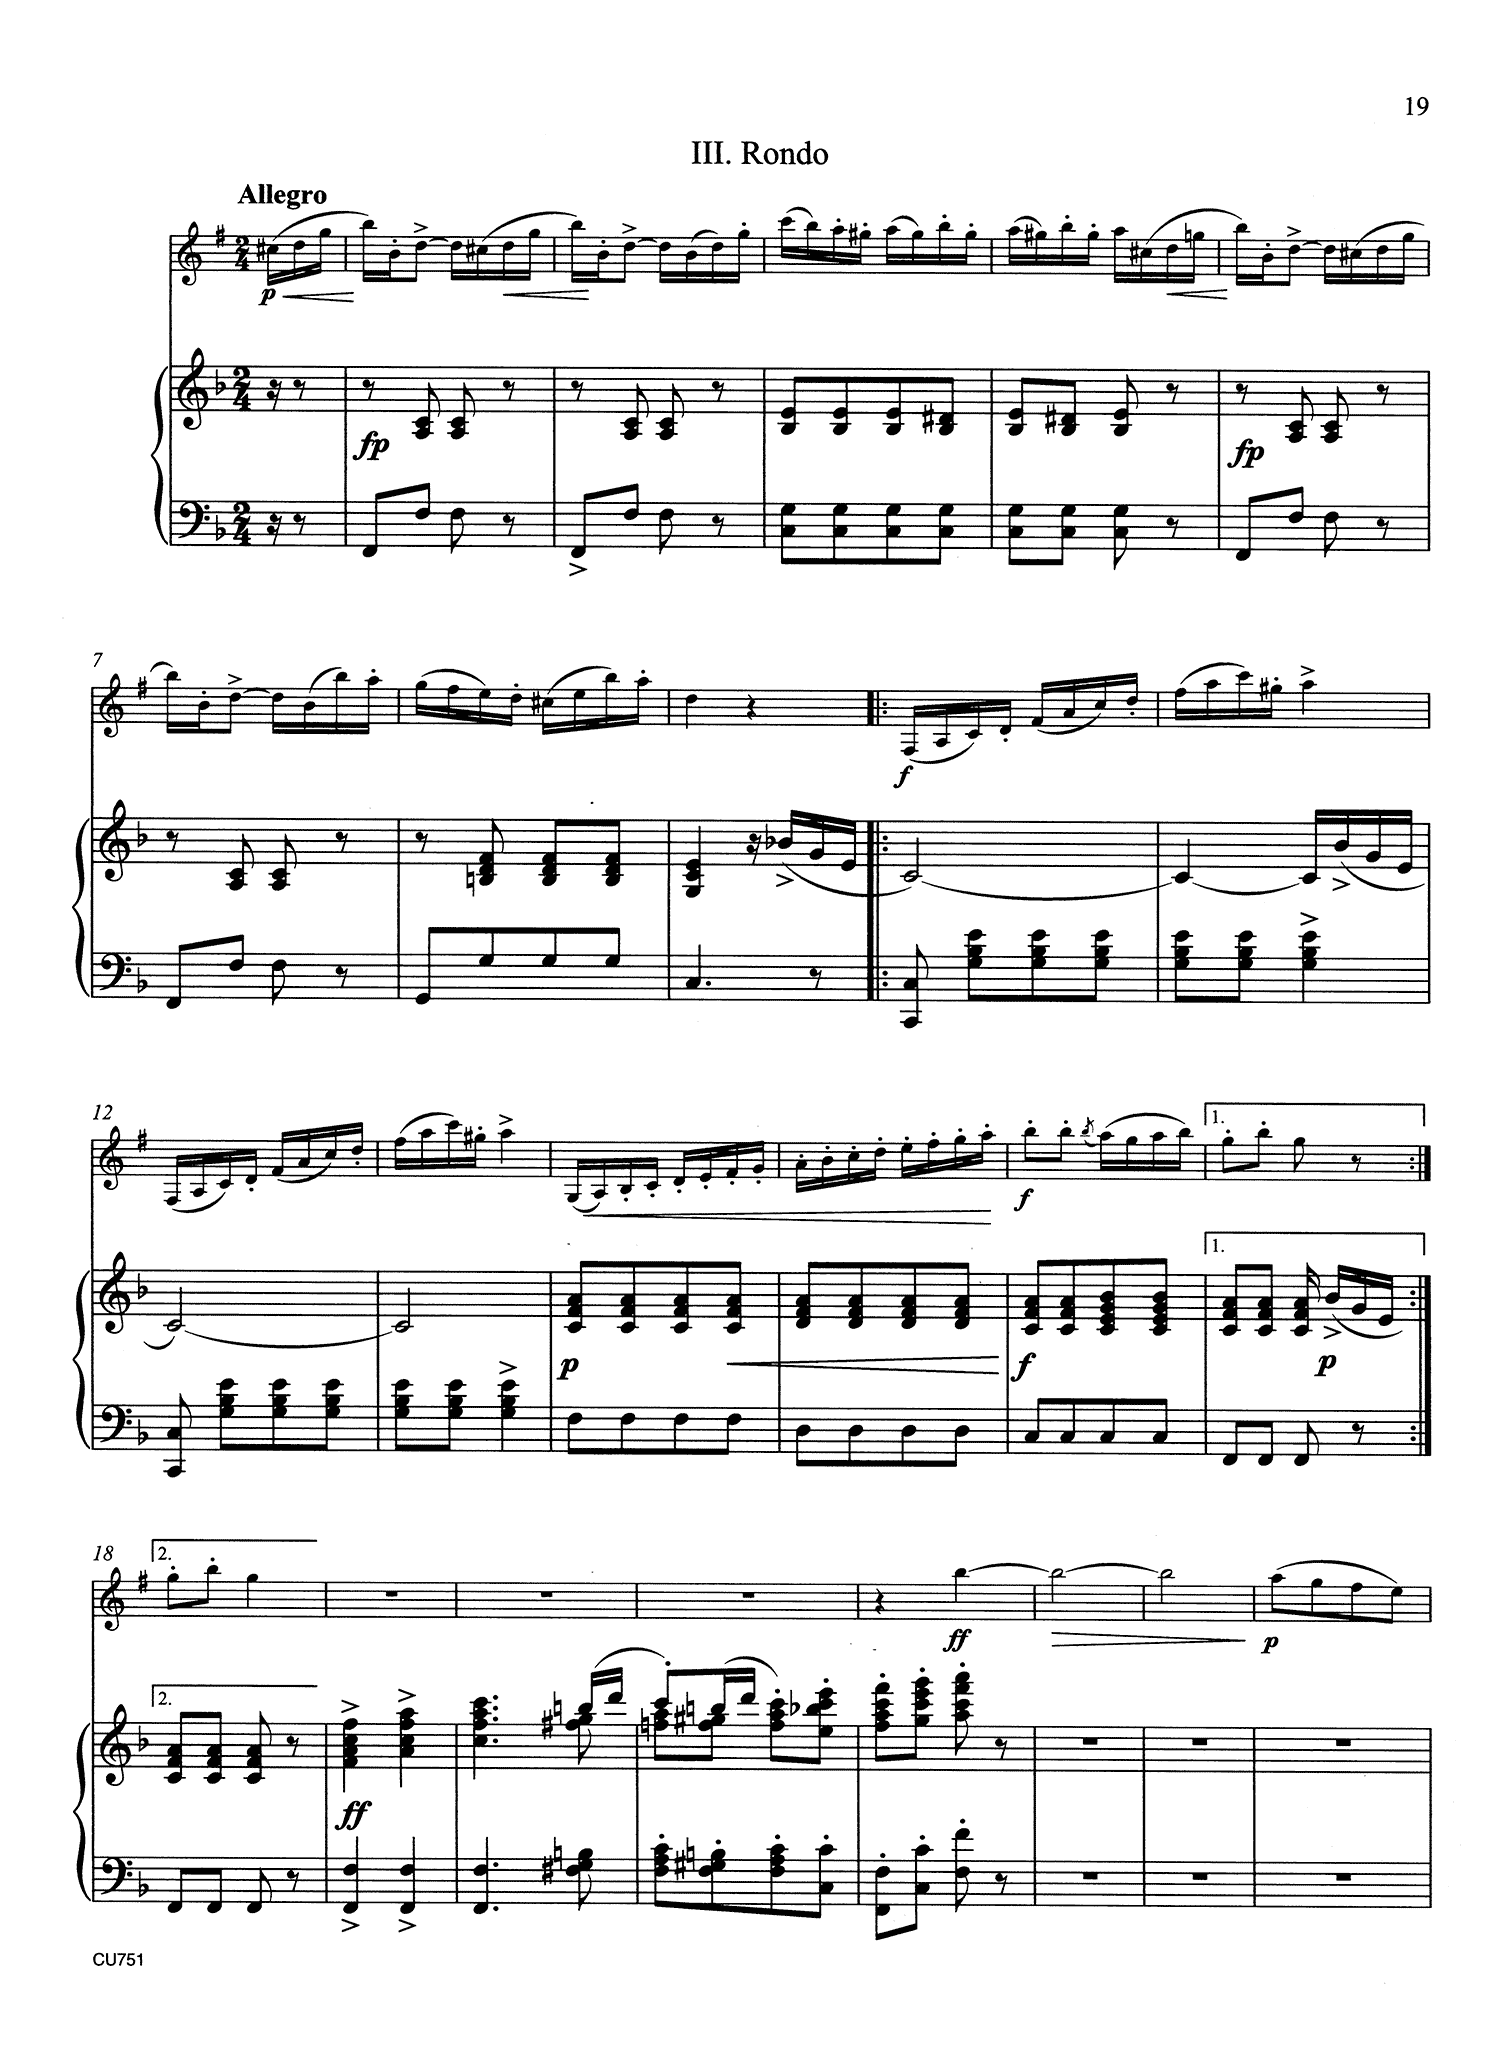 Clarinet Concerto No. 1, Op. 73 - Movement 3